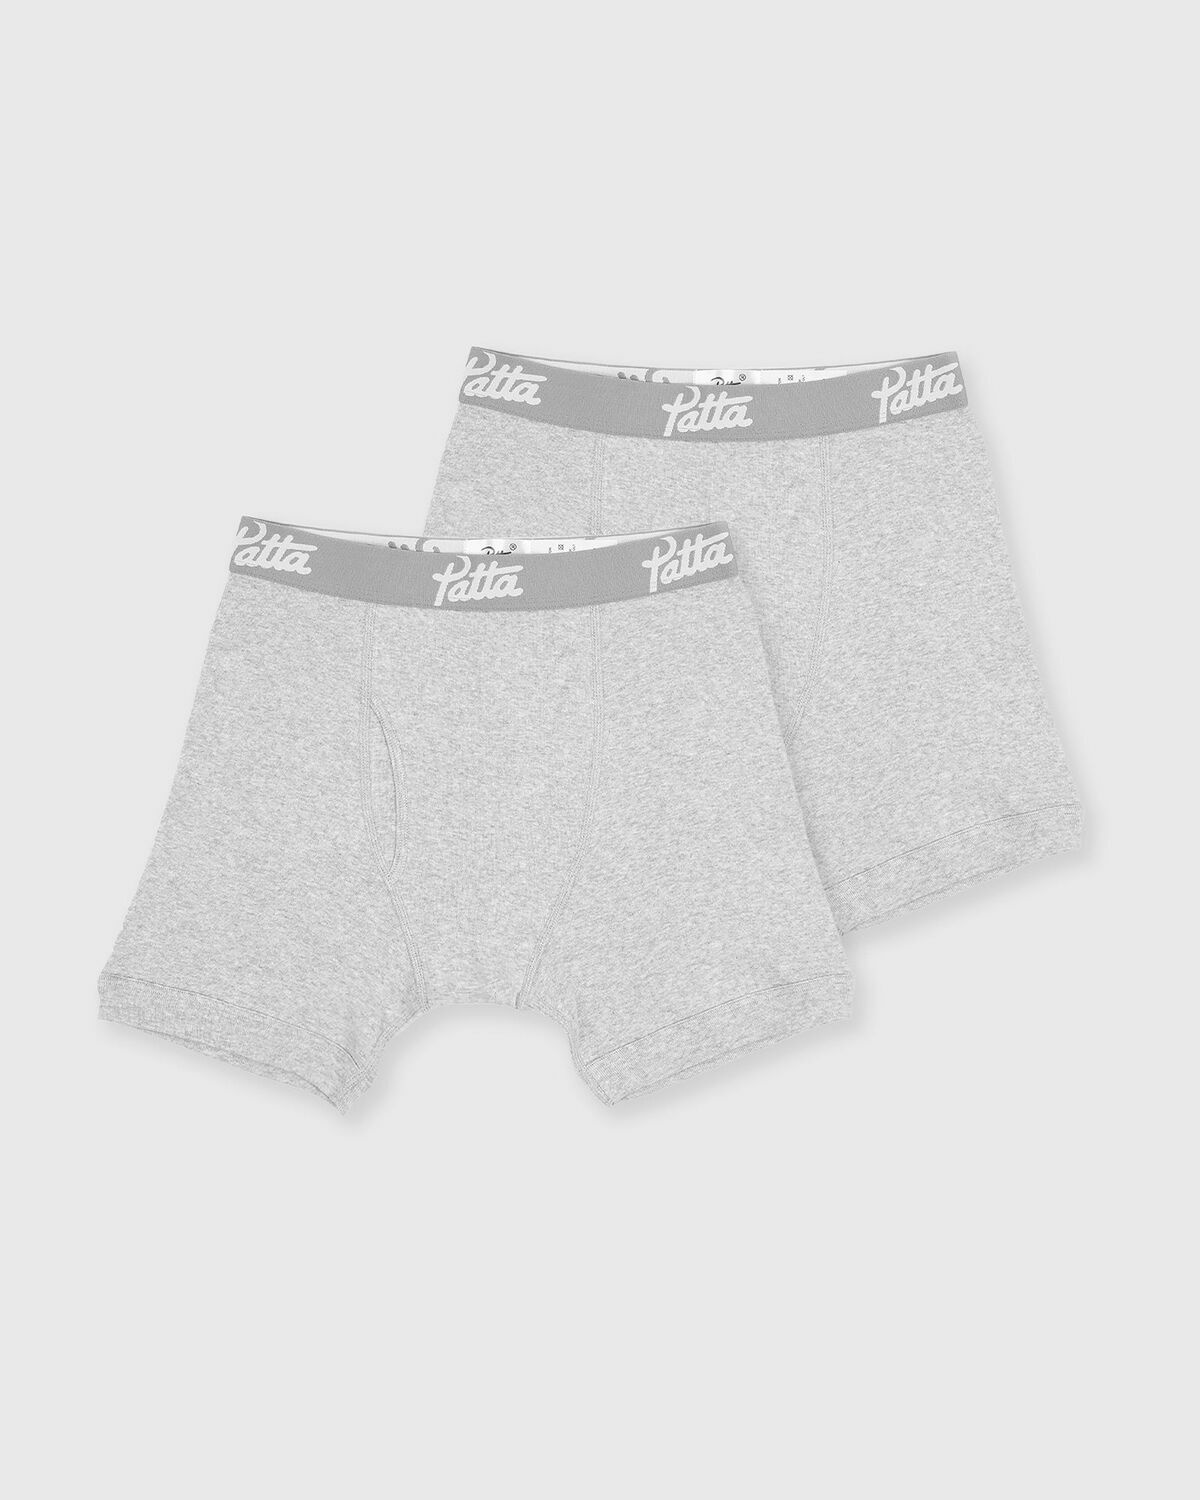 Patta Underwear Boxer Briefs 2-Pack